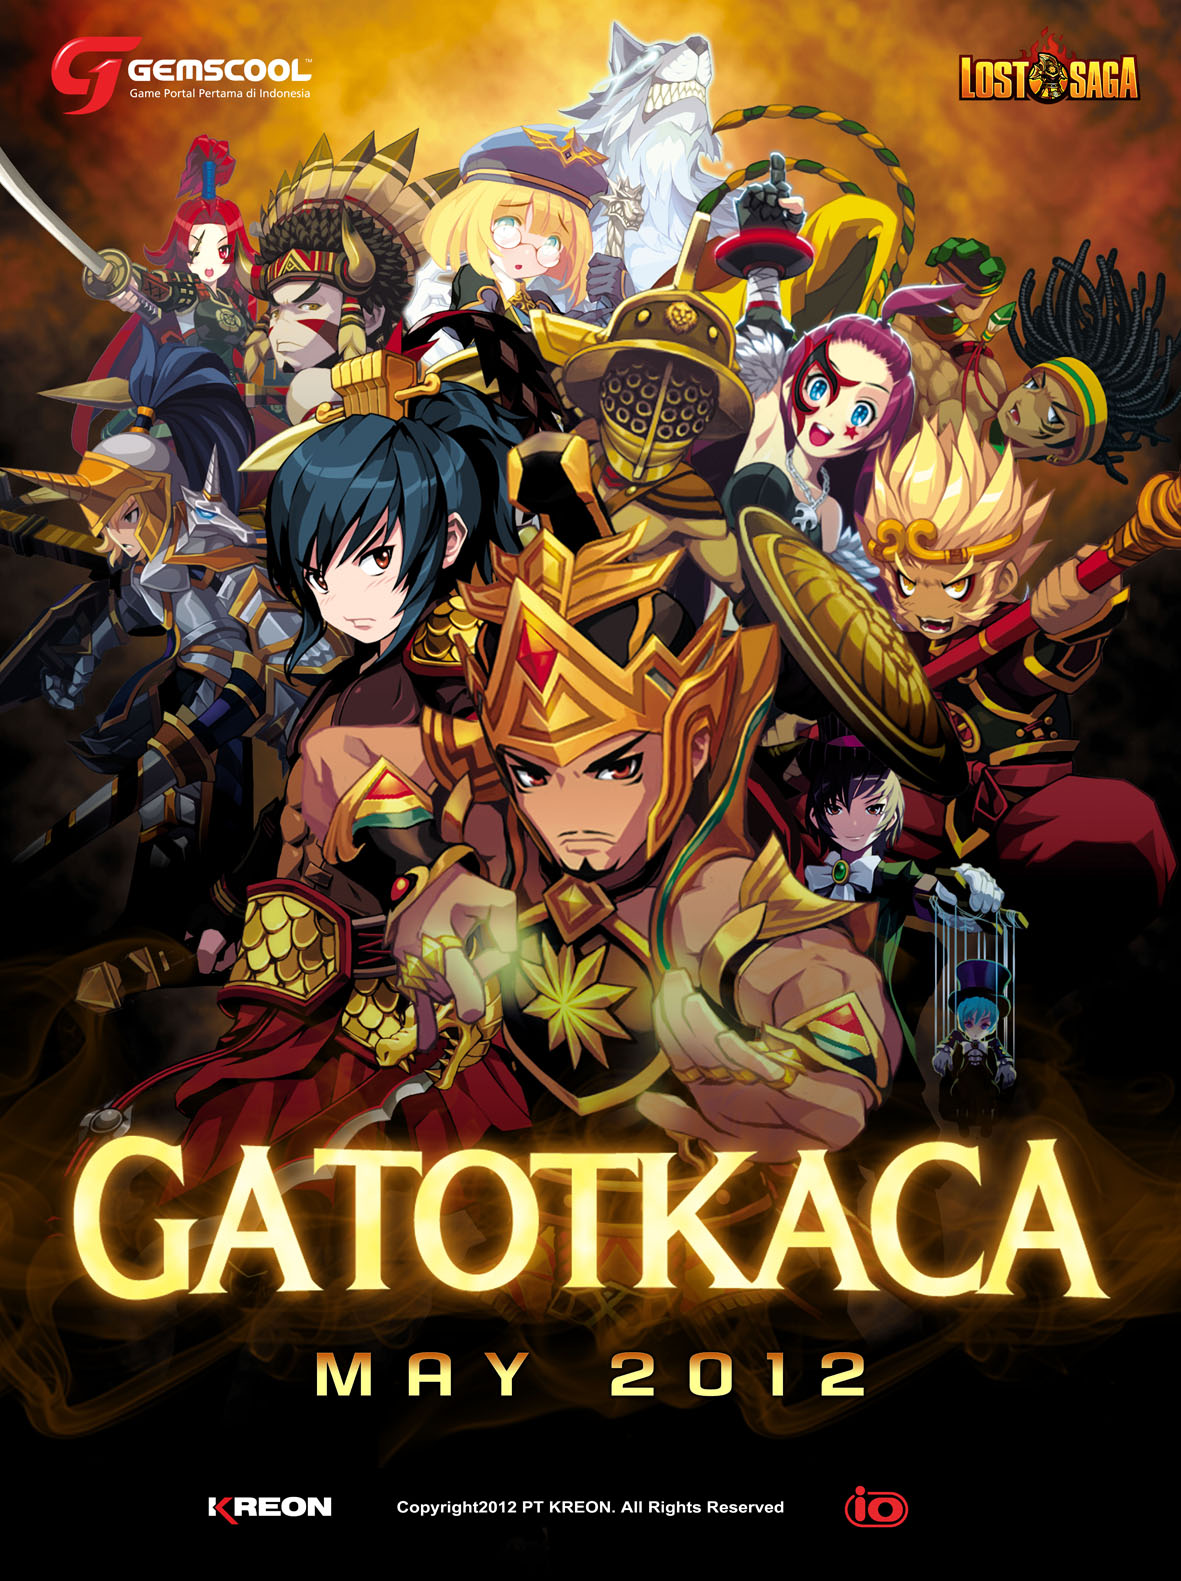 Lost Saga Gatot - HD Wallpaper 